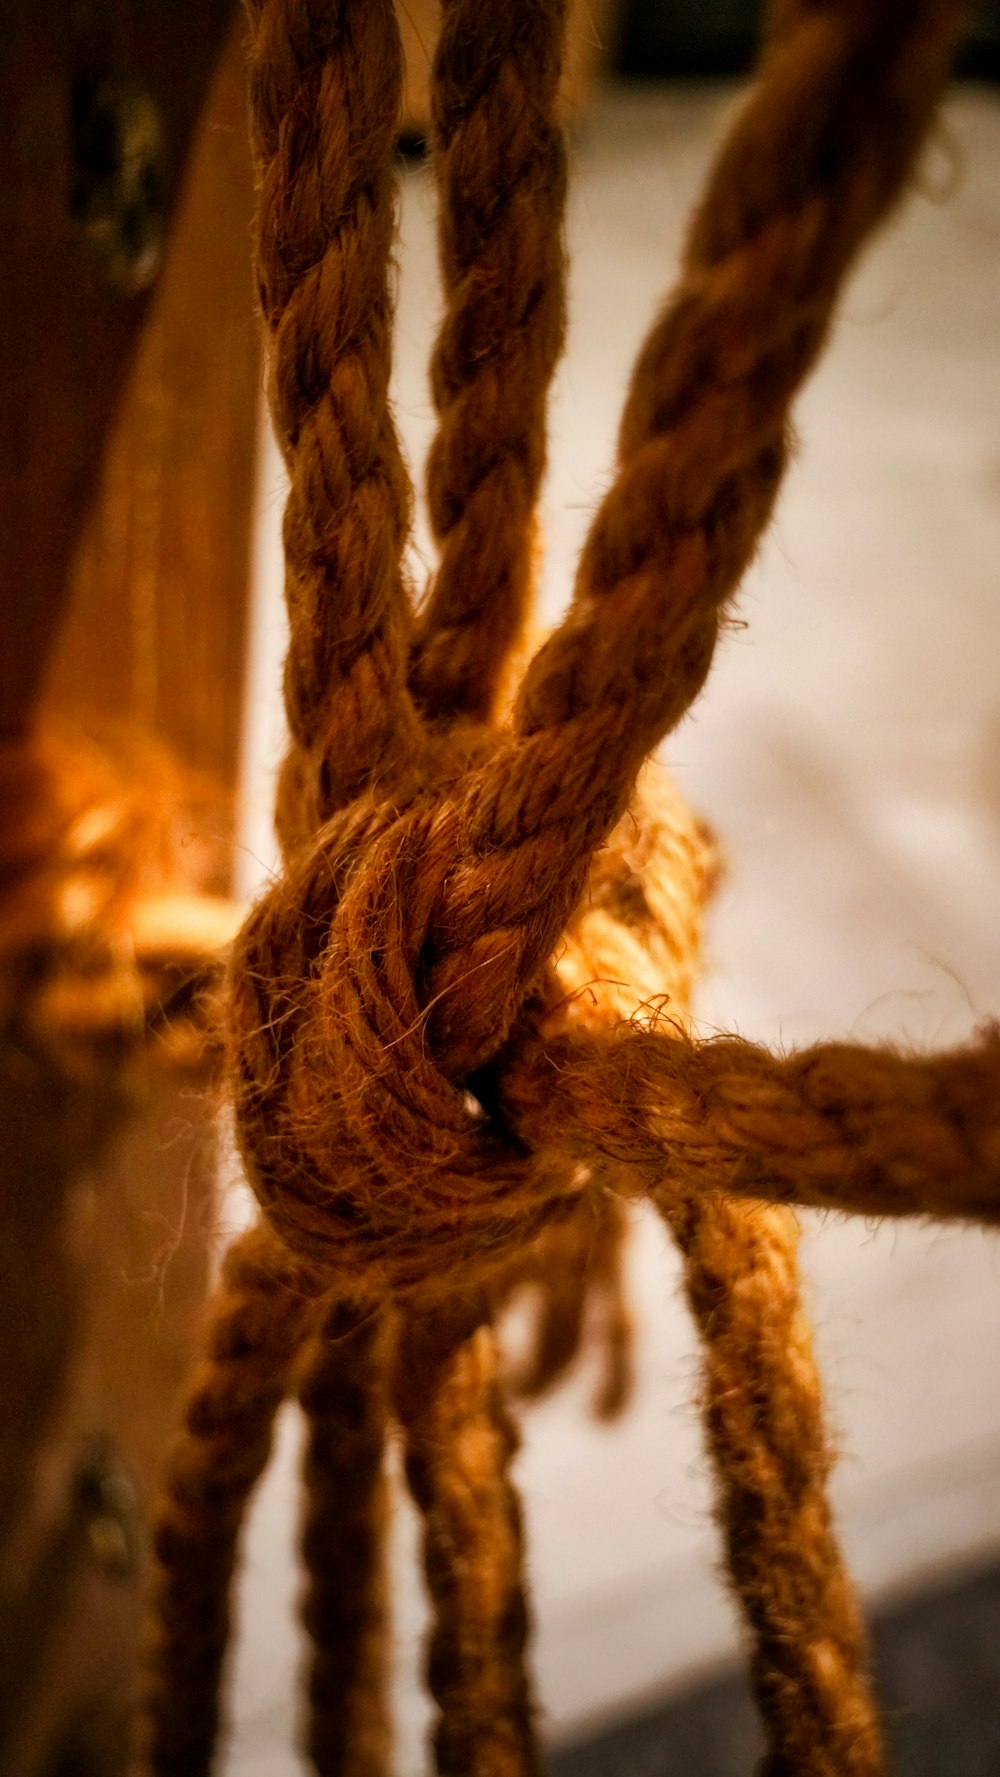 brown rope